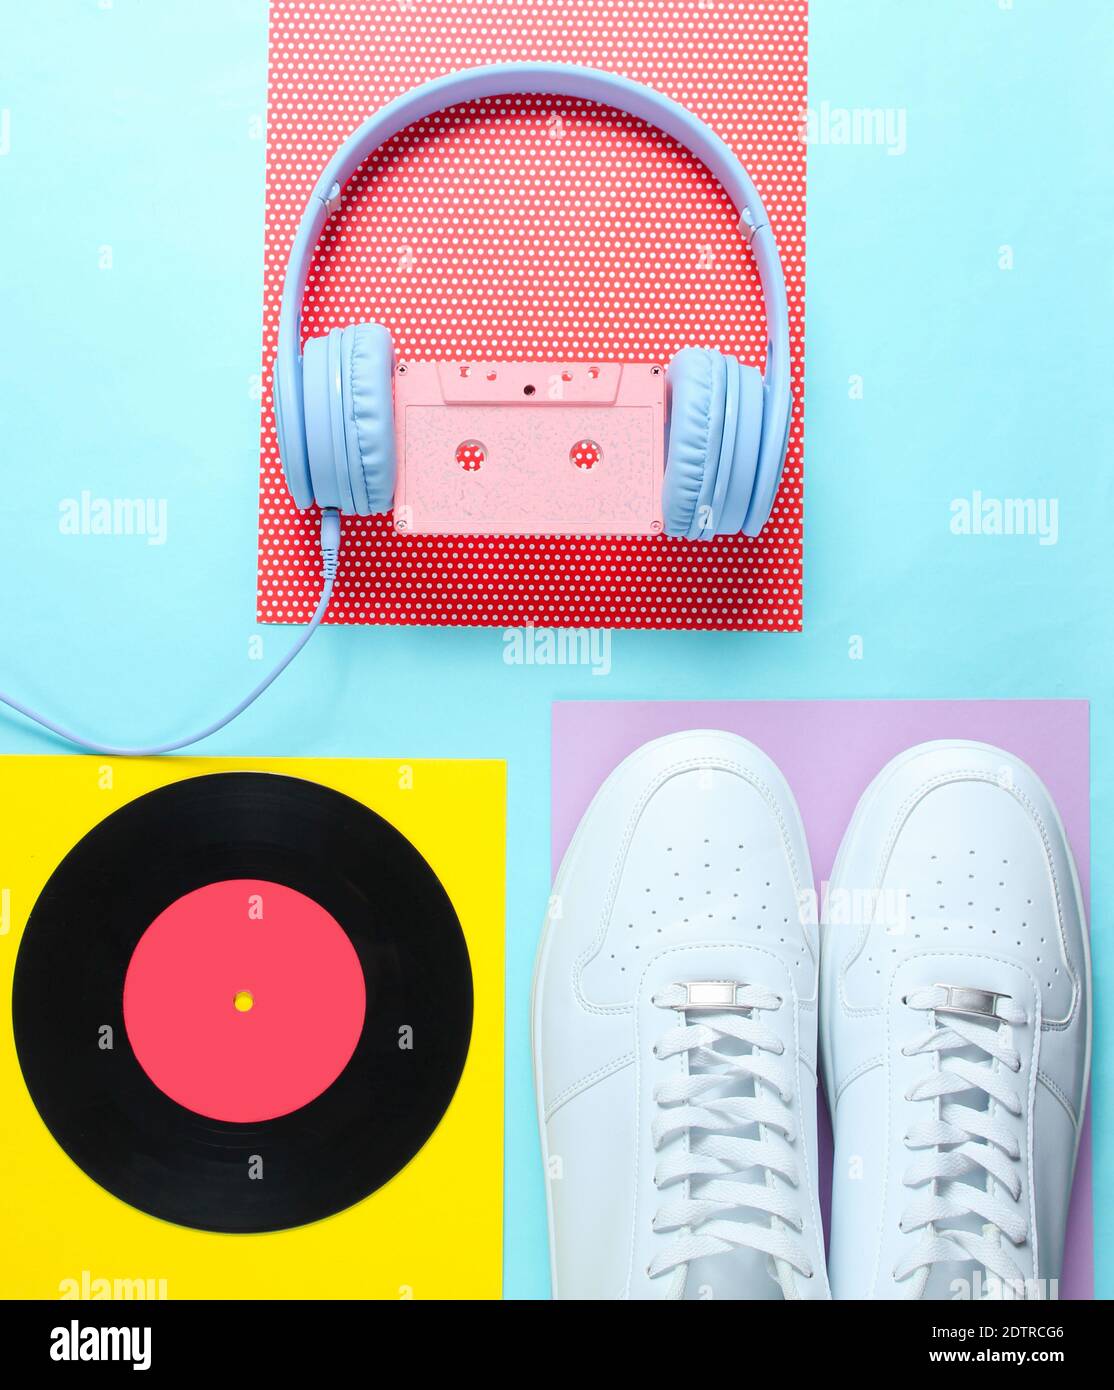 Pop Culture, Retro 80er Jahre altmodische Objekte auf einem kreativen  Hintergrund. Weiße Turnschuhe, Kopfhörer mit Audiokassette, lp-Platte.  Draufsicht. Flach liegend Stockfotografie - Alamy